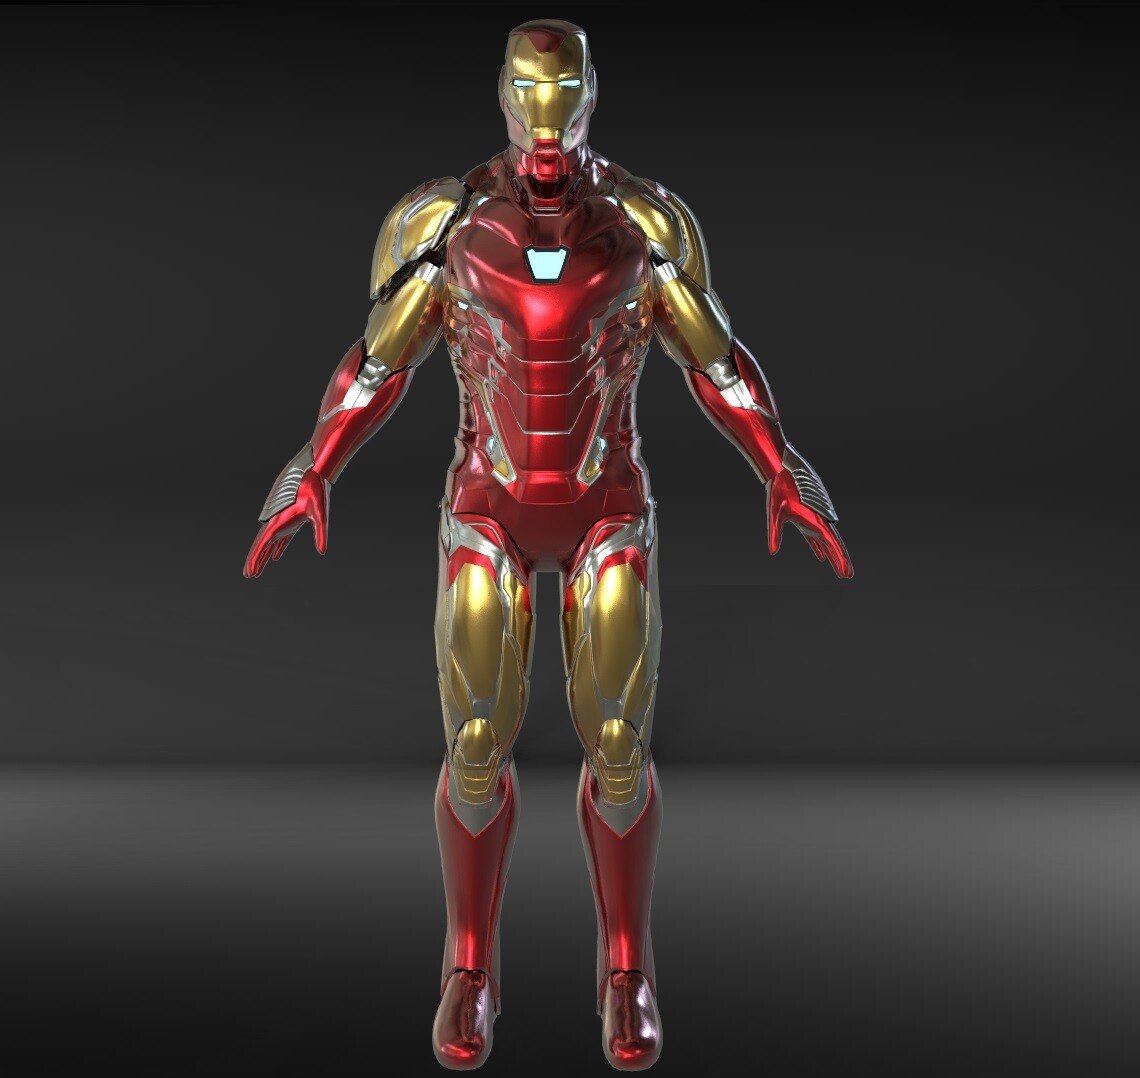 ArtStation Iron Man Mark 85 (Endgame) 3D Model, Jonathan